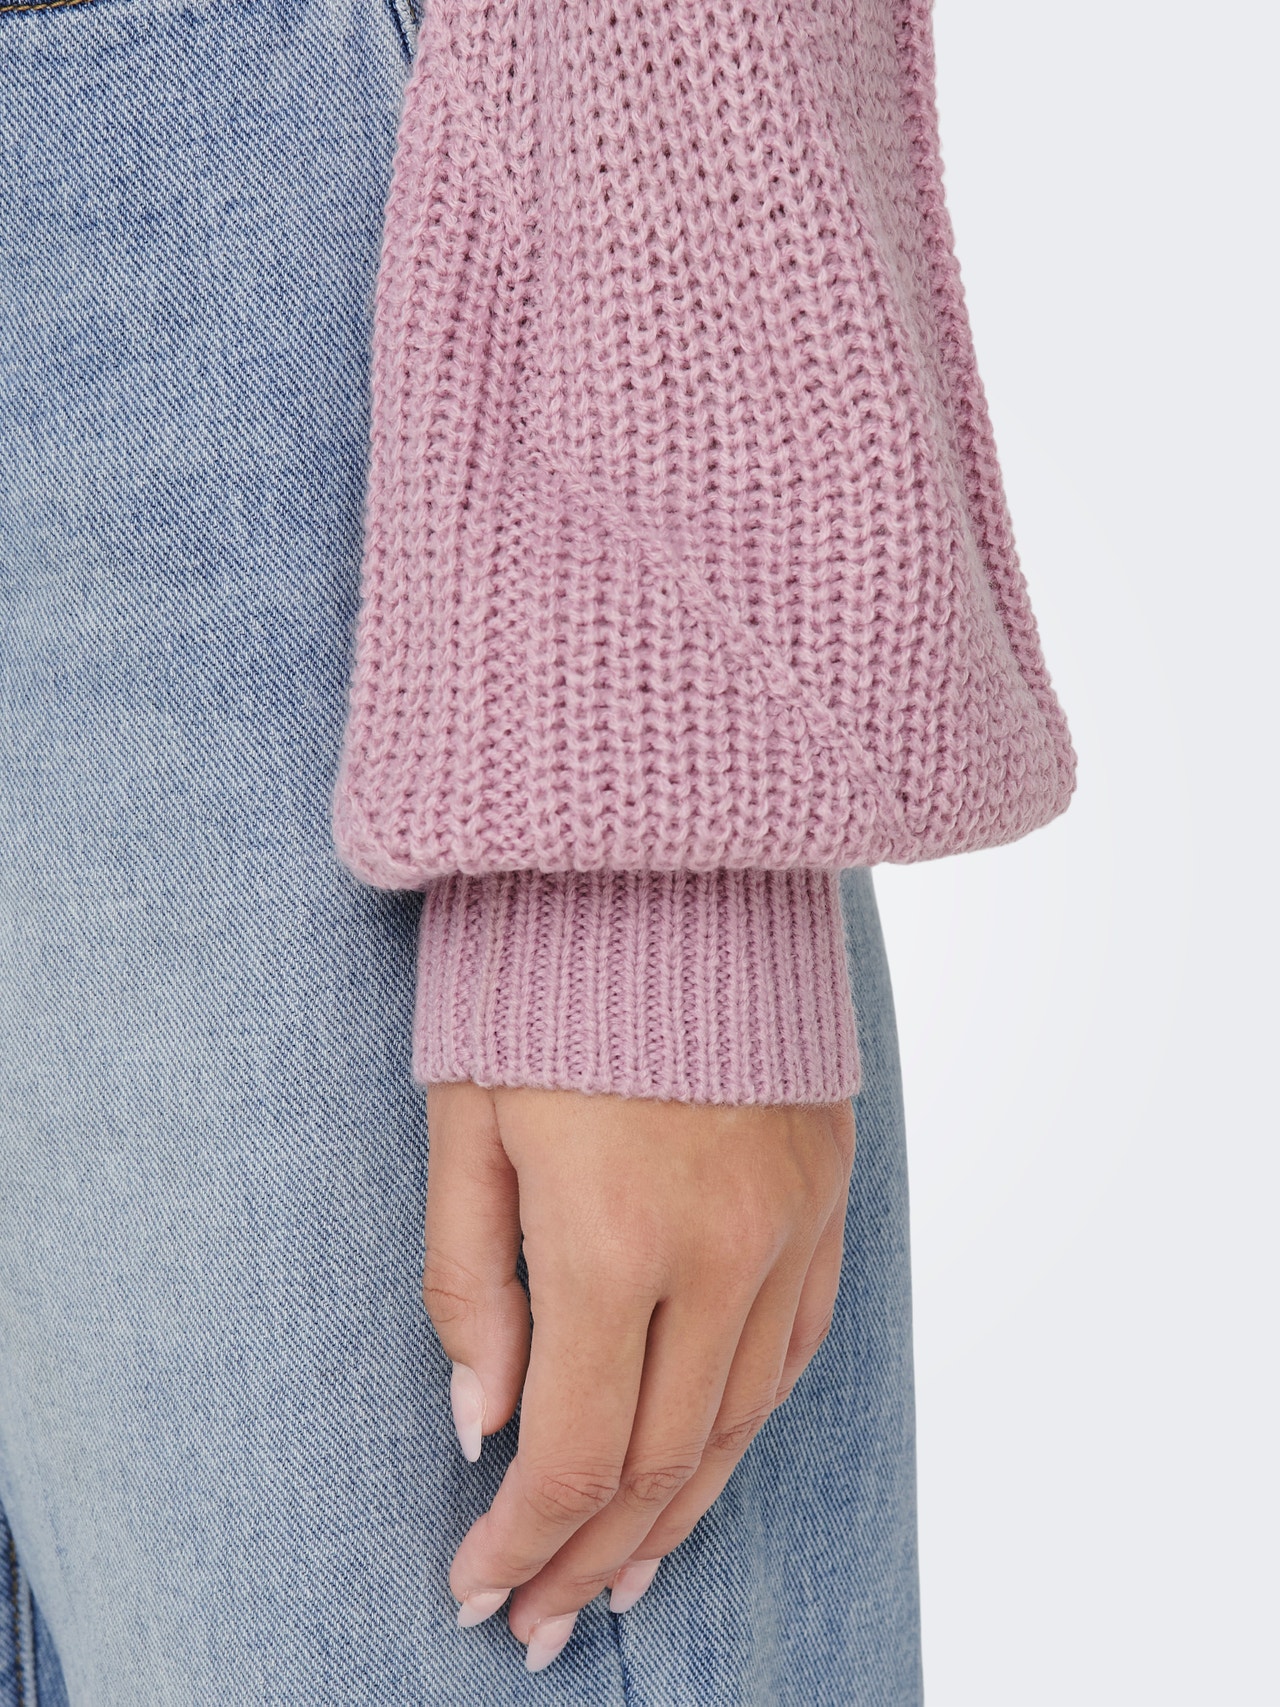 ONLY Solid color texture knit -Mauve Mist - 15281984